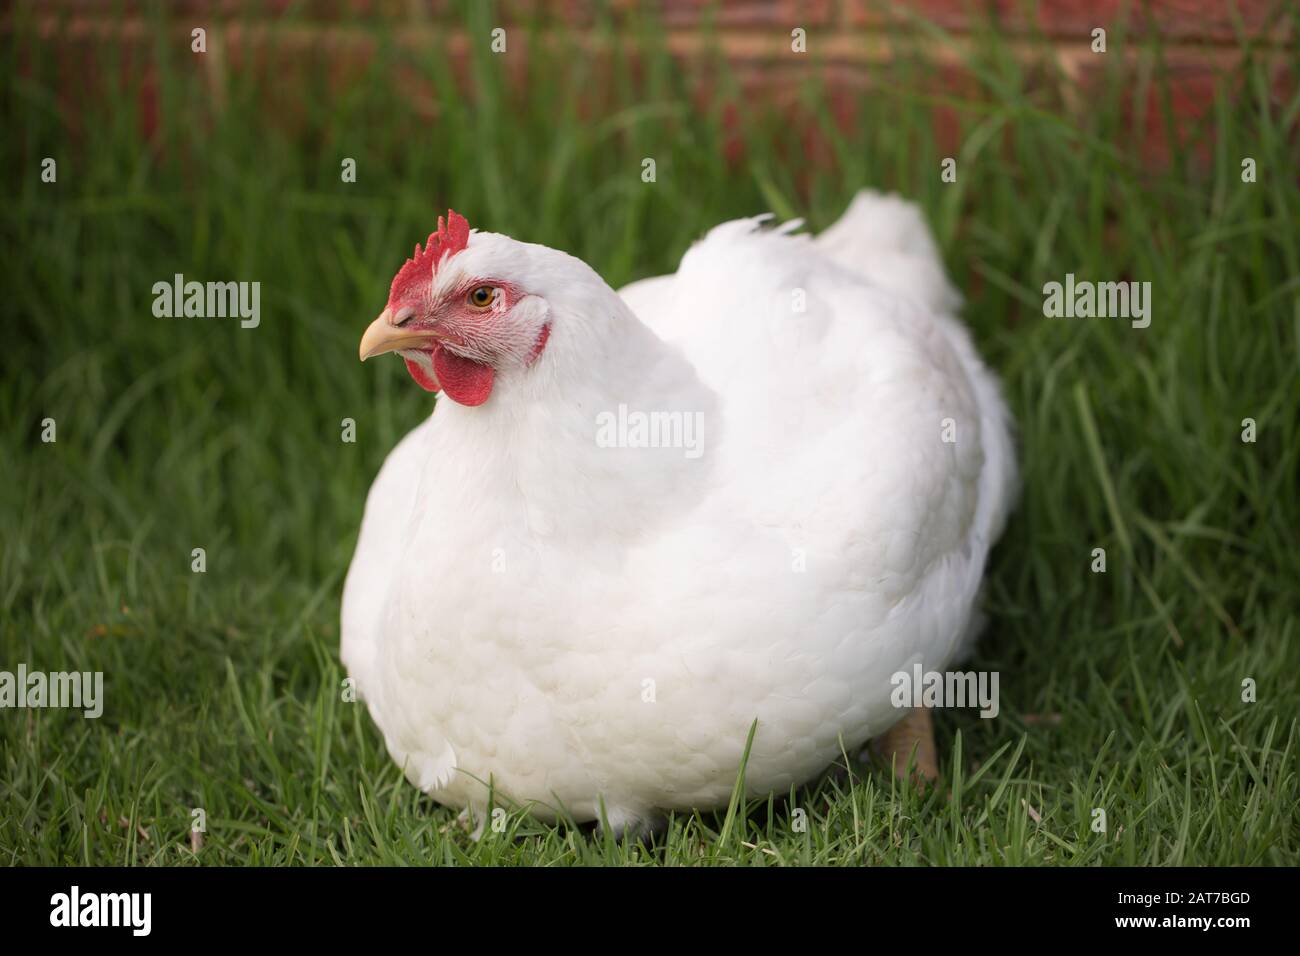 Ritratto di pollo bianco da carne (gallus gallus domesticus) a corpo pieno guardando la macchina fotografica, pollo libero di gamma su allevamento di pollo Foto Stock